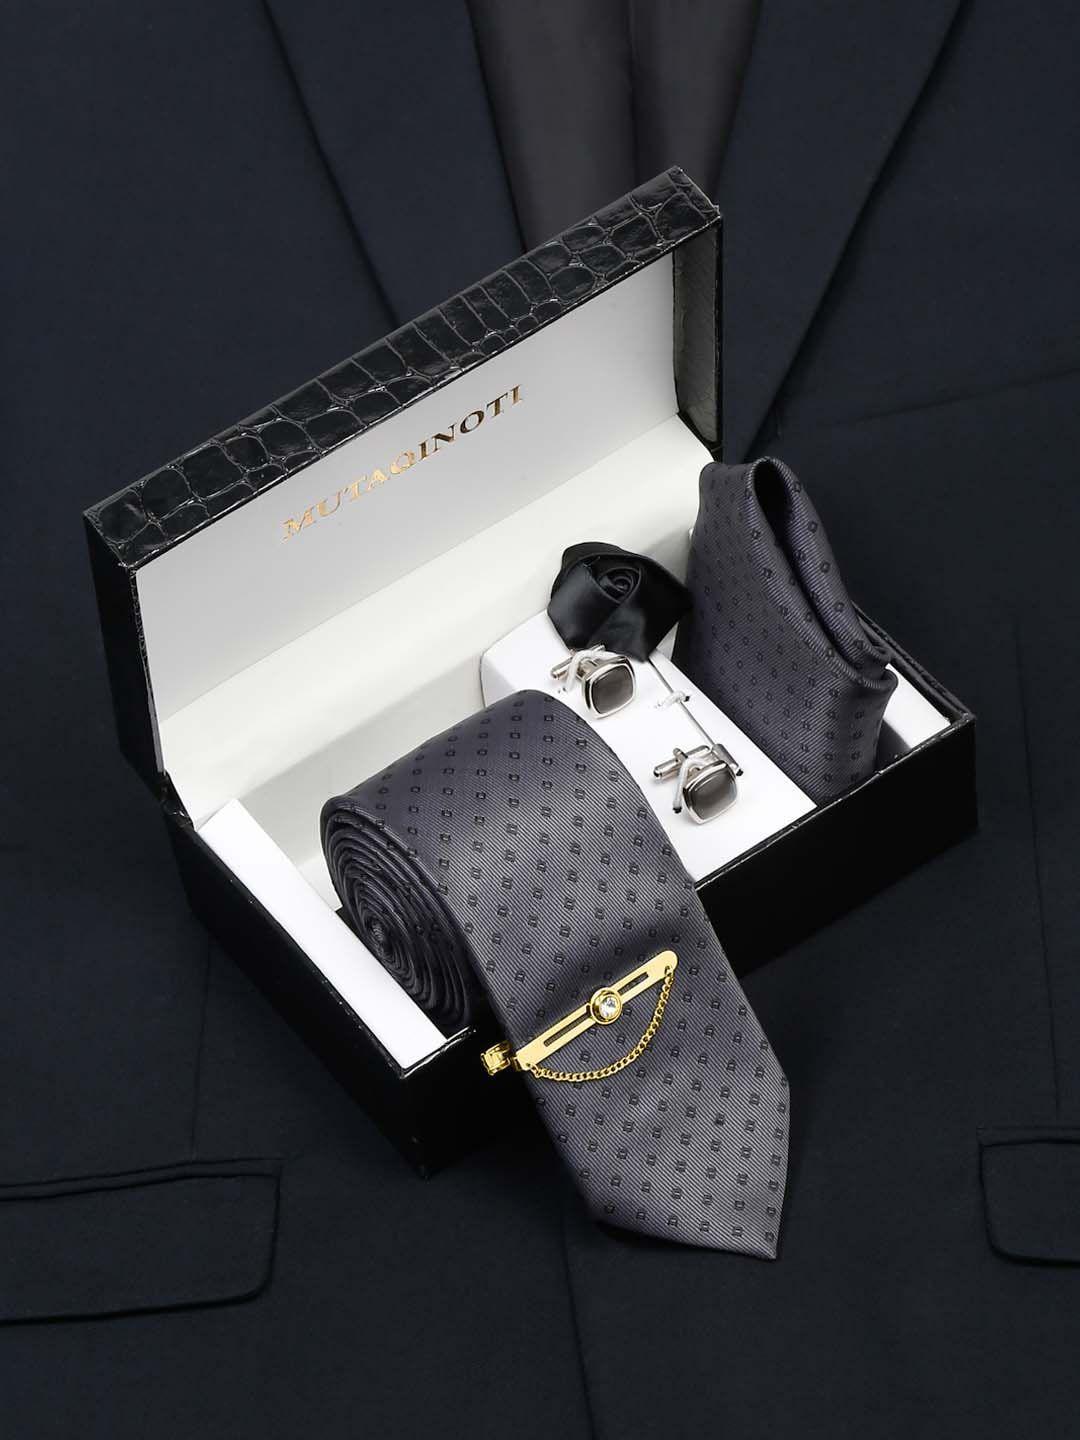 mutaqinoti men silk necktie accessory gift set